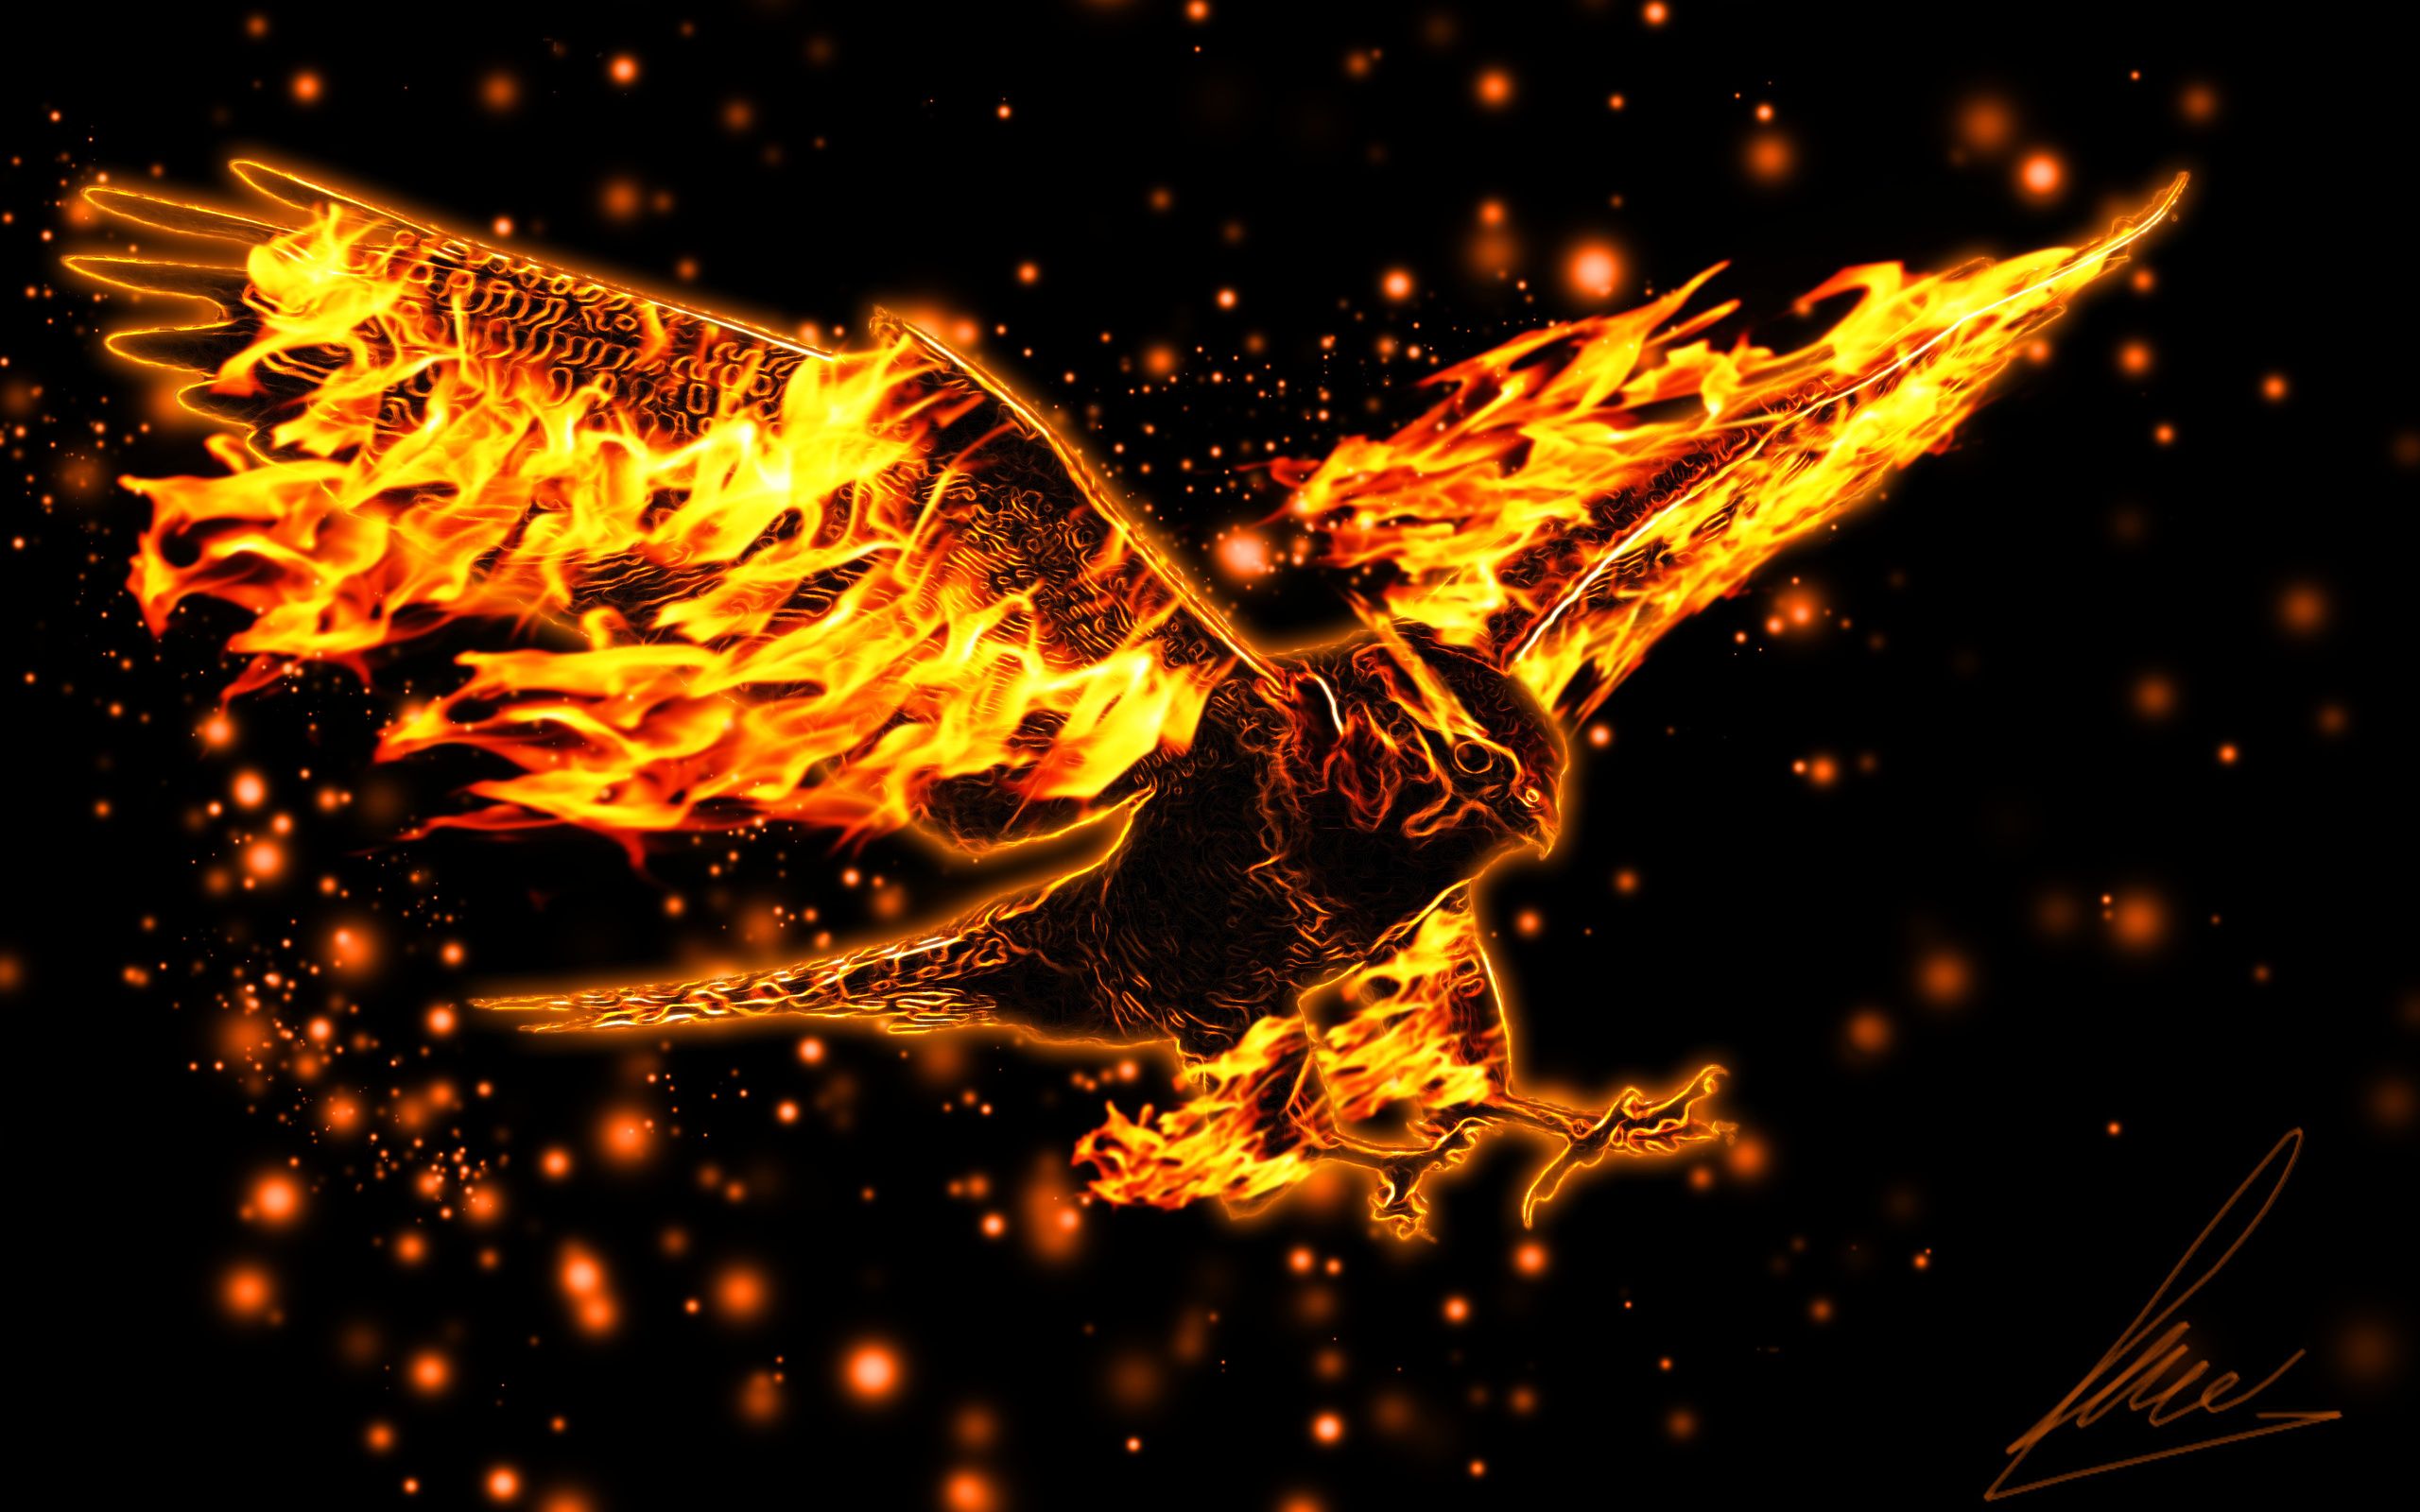  Adler Hintergrundbild 2560x1600. Download Hintergrundbild flug, flügel, adler, brennende die Auflösung 2560x1600